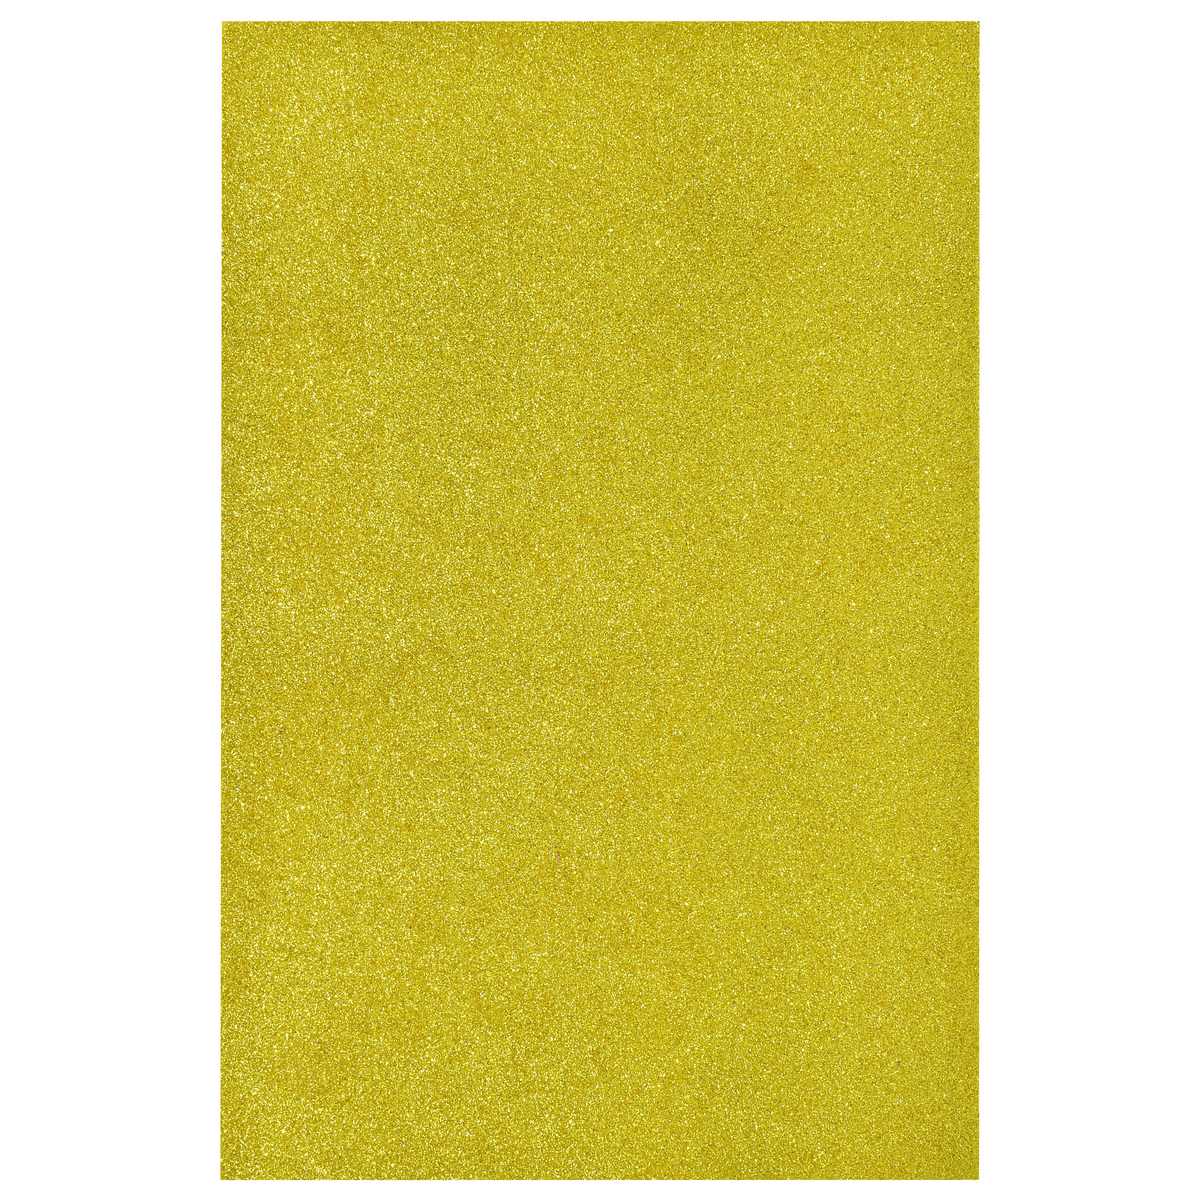 jags-mumbai Glitter Paper & Foam Sheet A4 Glitter Foam Sheet Without Sticker Gold 00196GD